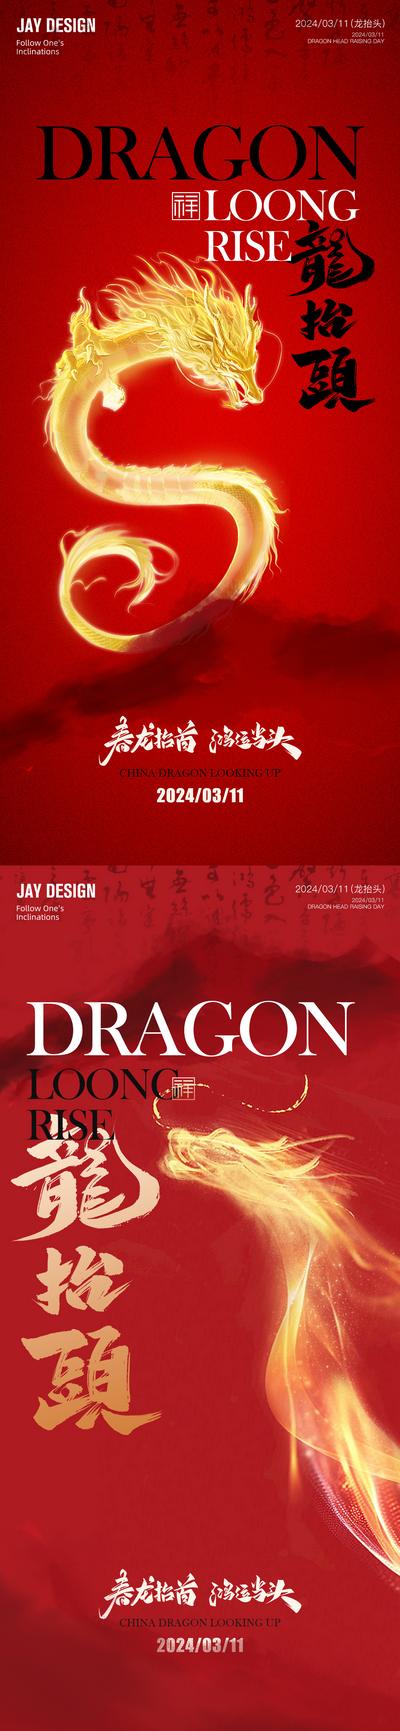 南门网 广告 海报 地产 龙抬头 中式 红金 中国传统节日 二月初二 节日 龙年 喜庆